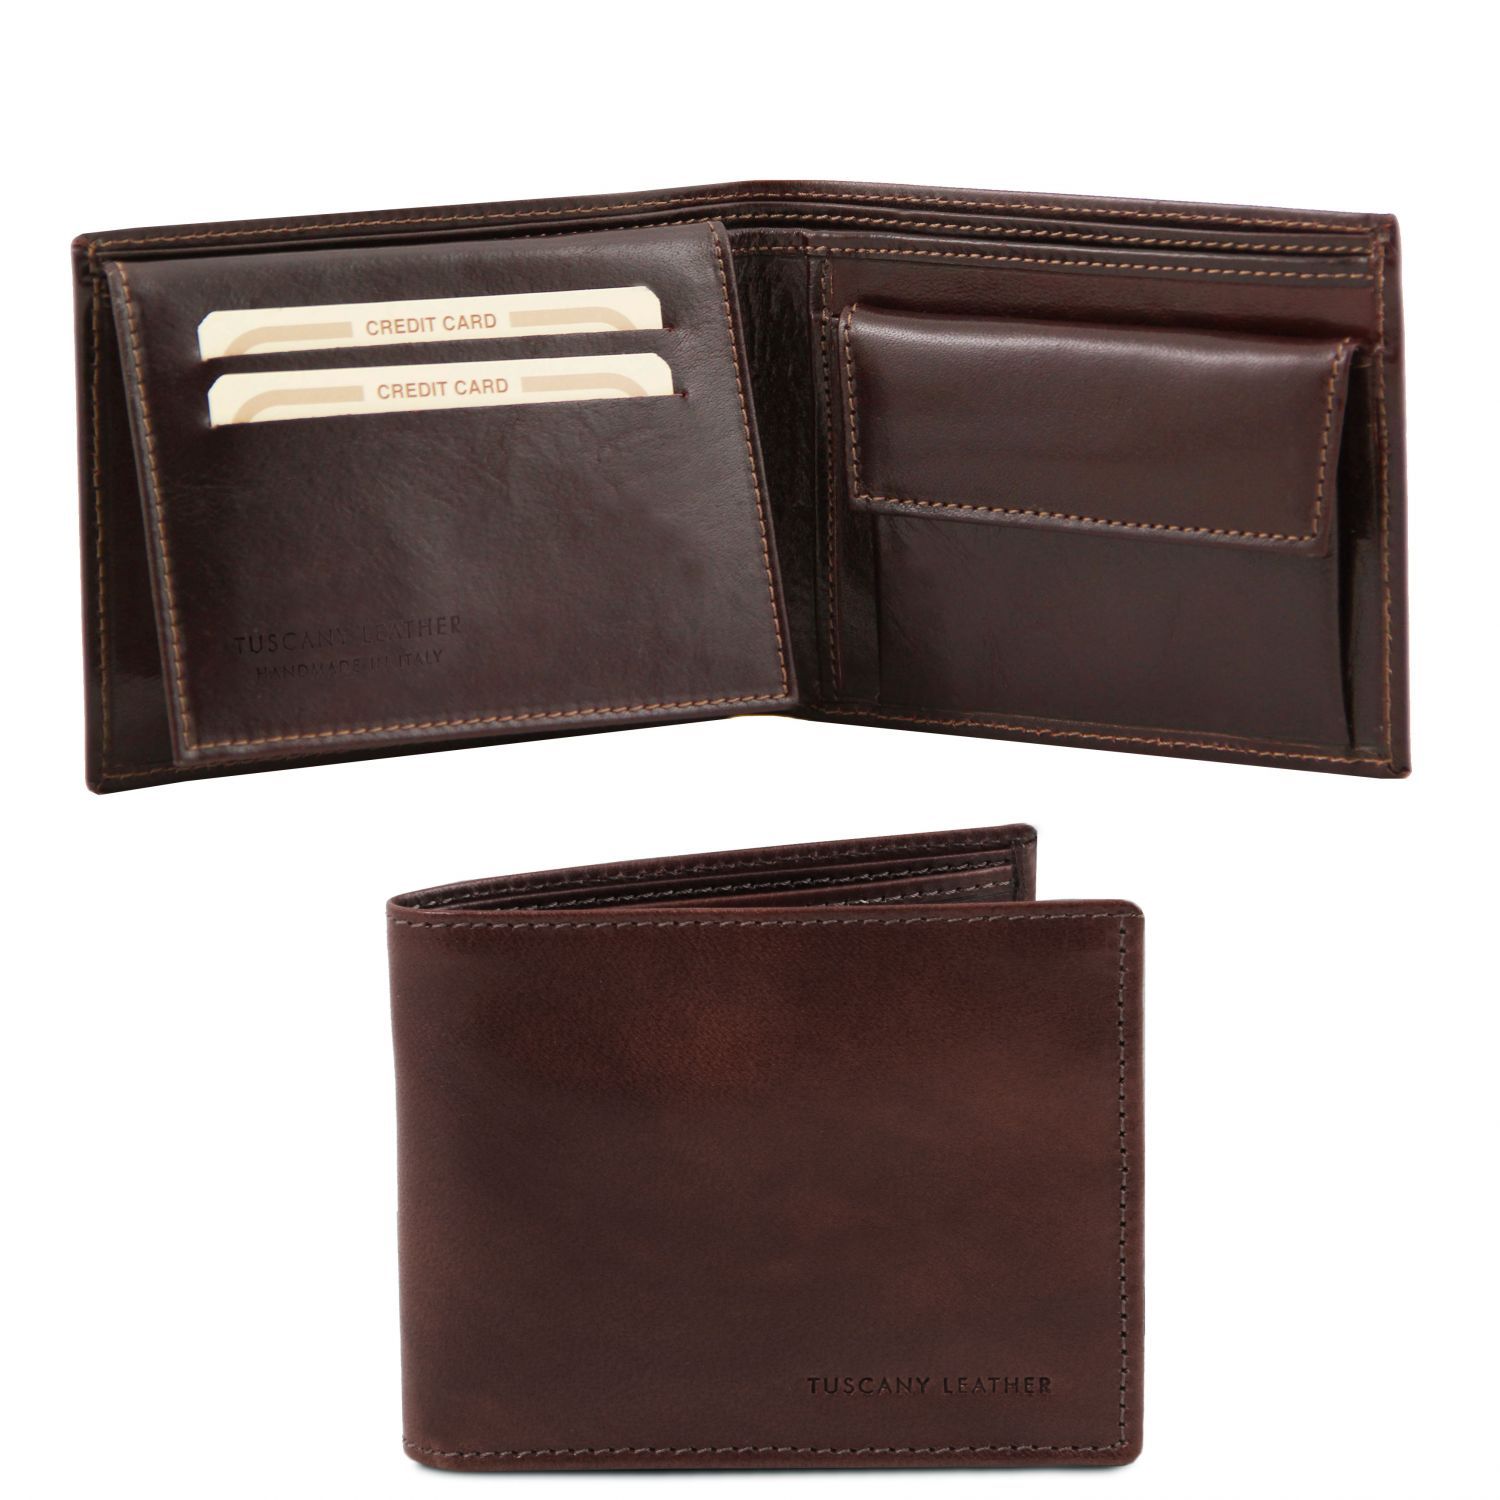 Elégant portefeuille en cuir pour homme avec 3 volets et porte monnaie - Marron foncé (TL140763)